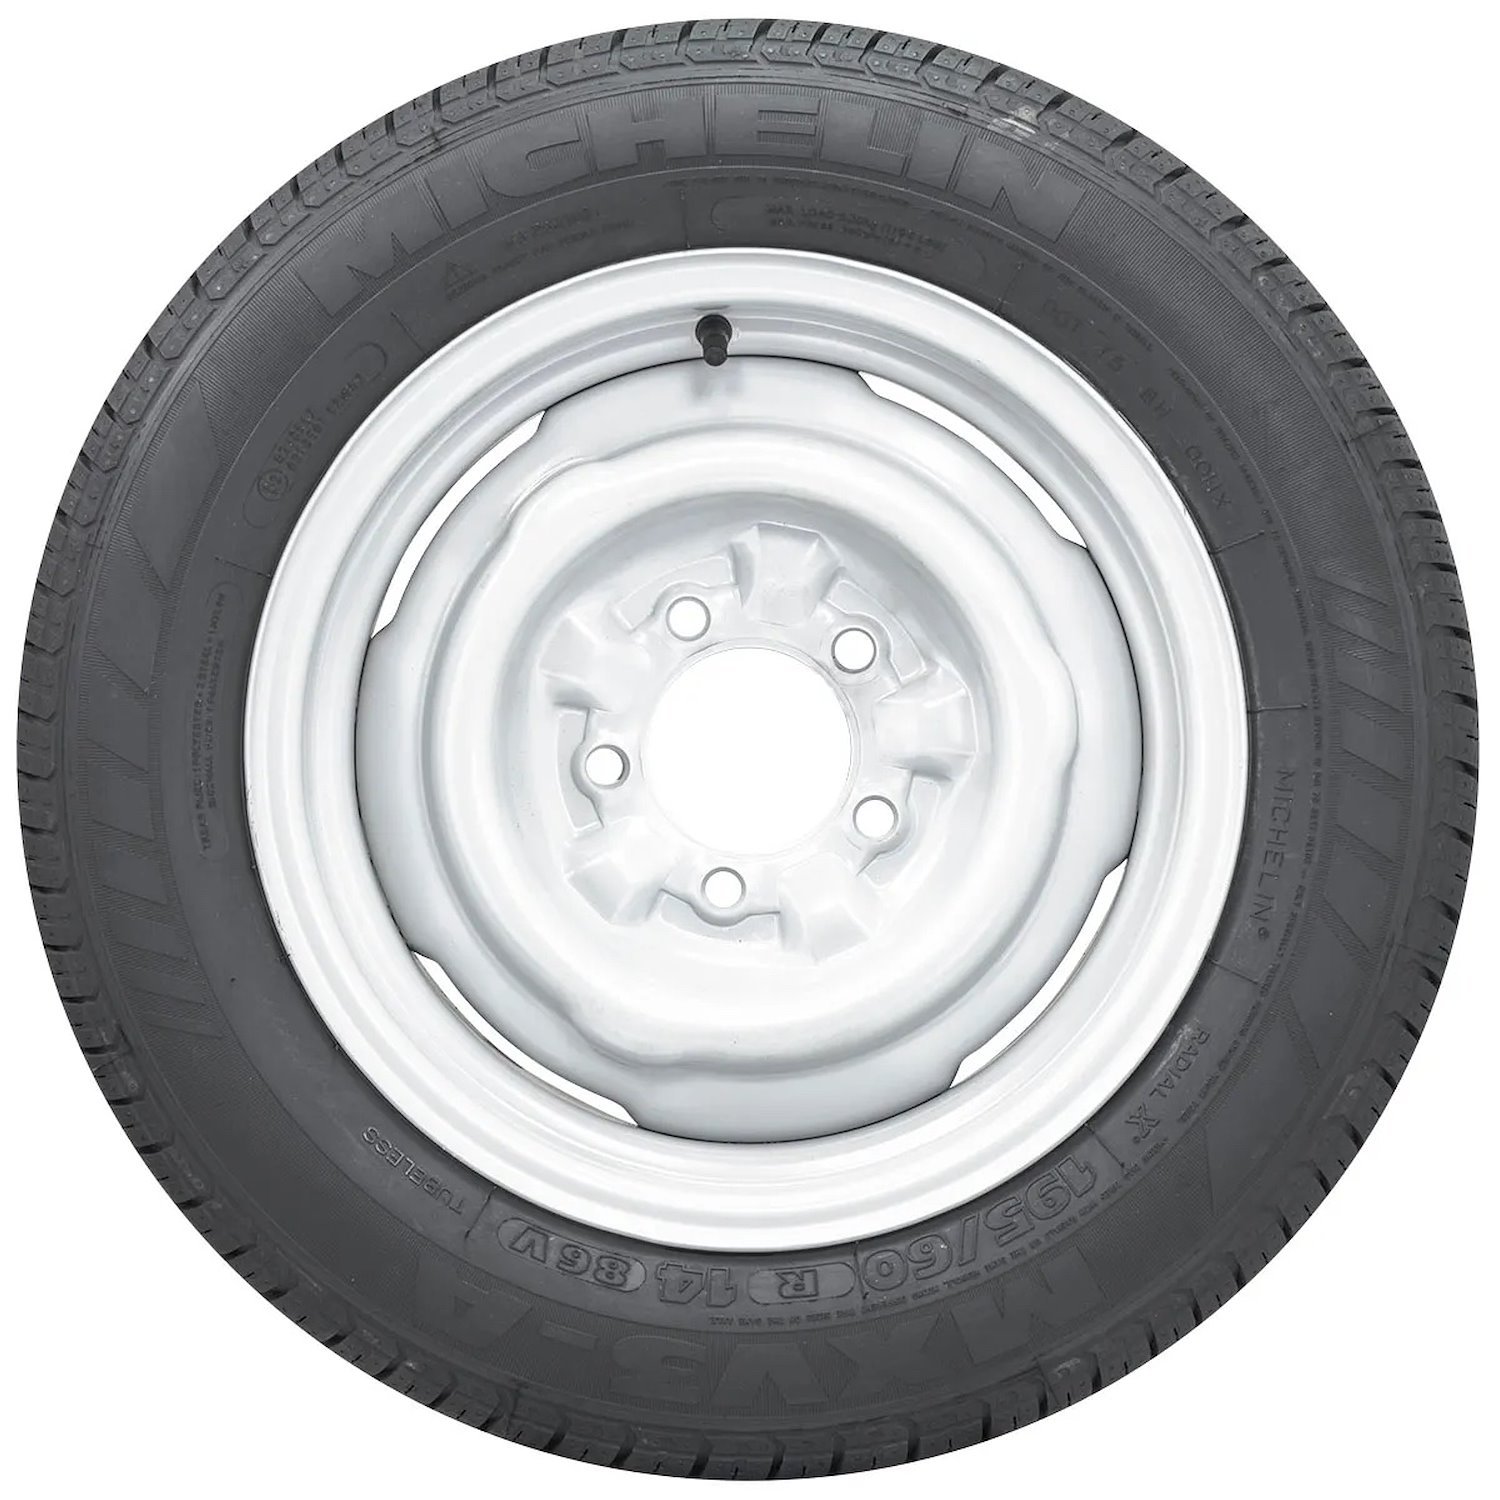 556105 Tire, Michelin MXV3-A, 195/60VR14 86V